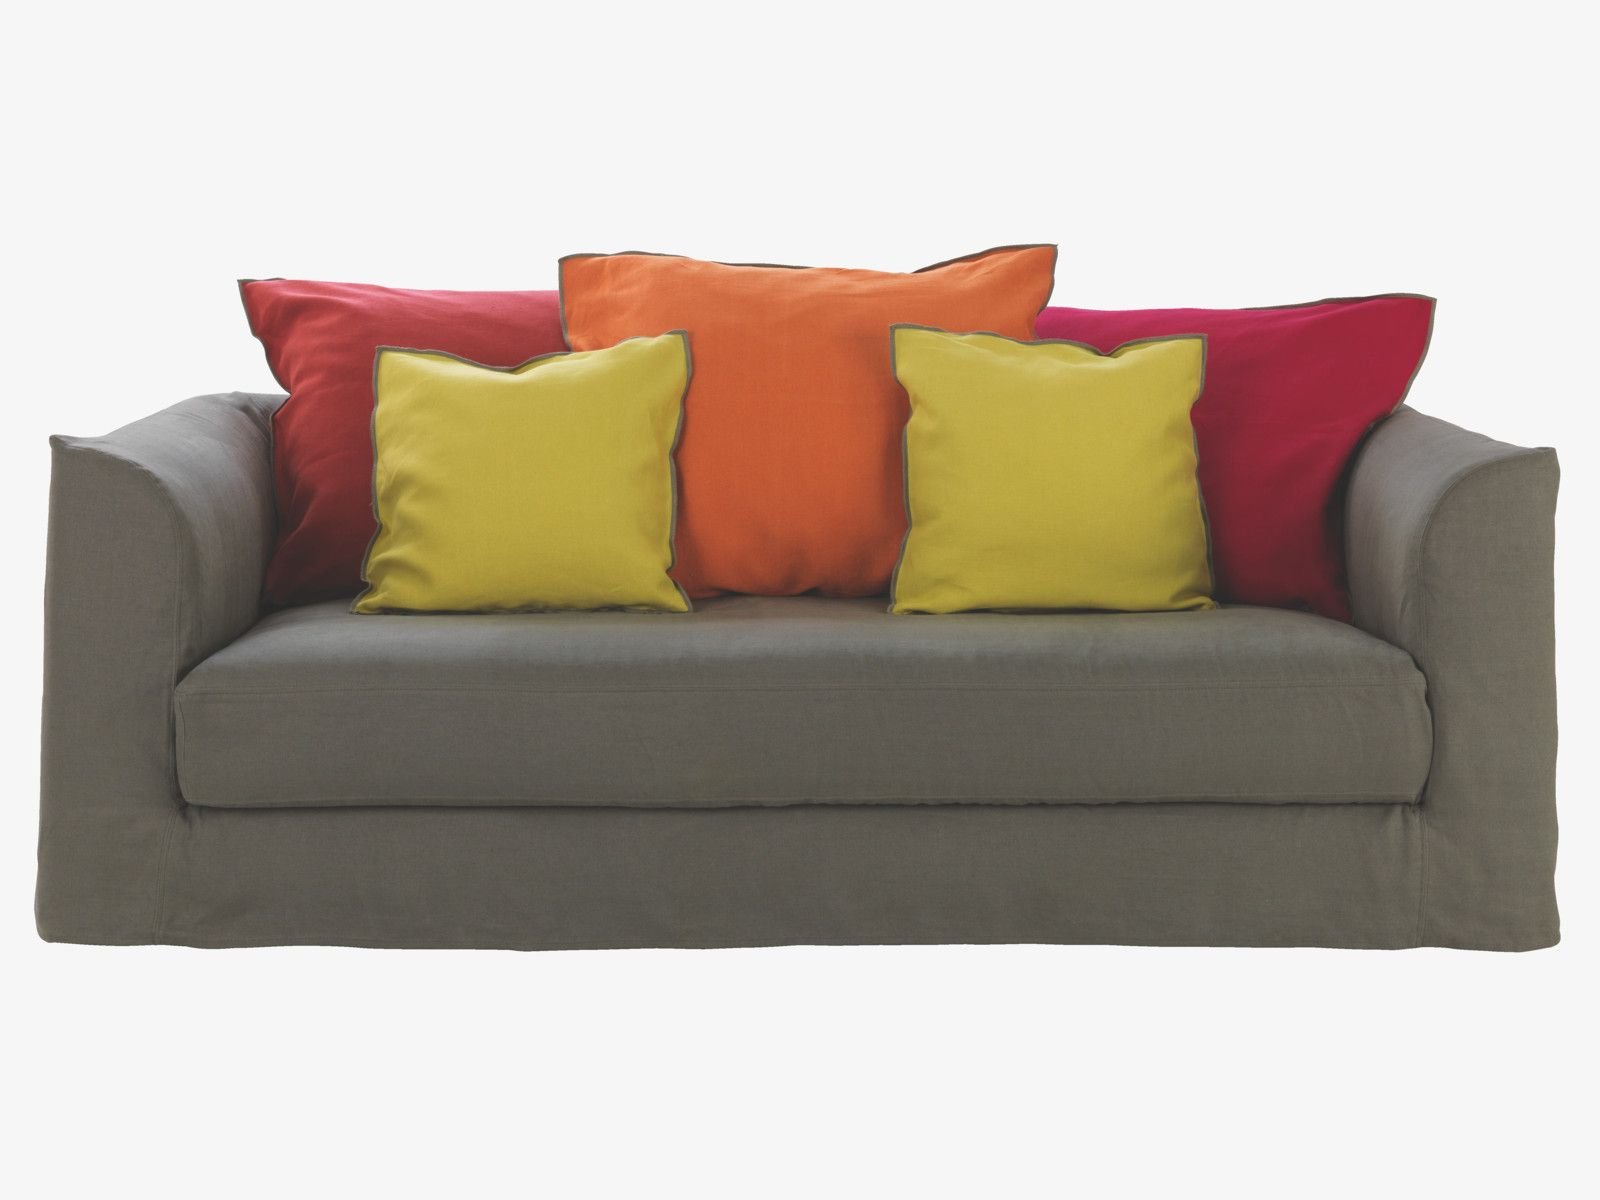 Sofa pictures. Подушка для дивана. Диван с разноцветными подушками. Диванчик с подушками. Серый диван с цветными подушками.